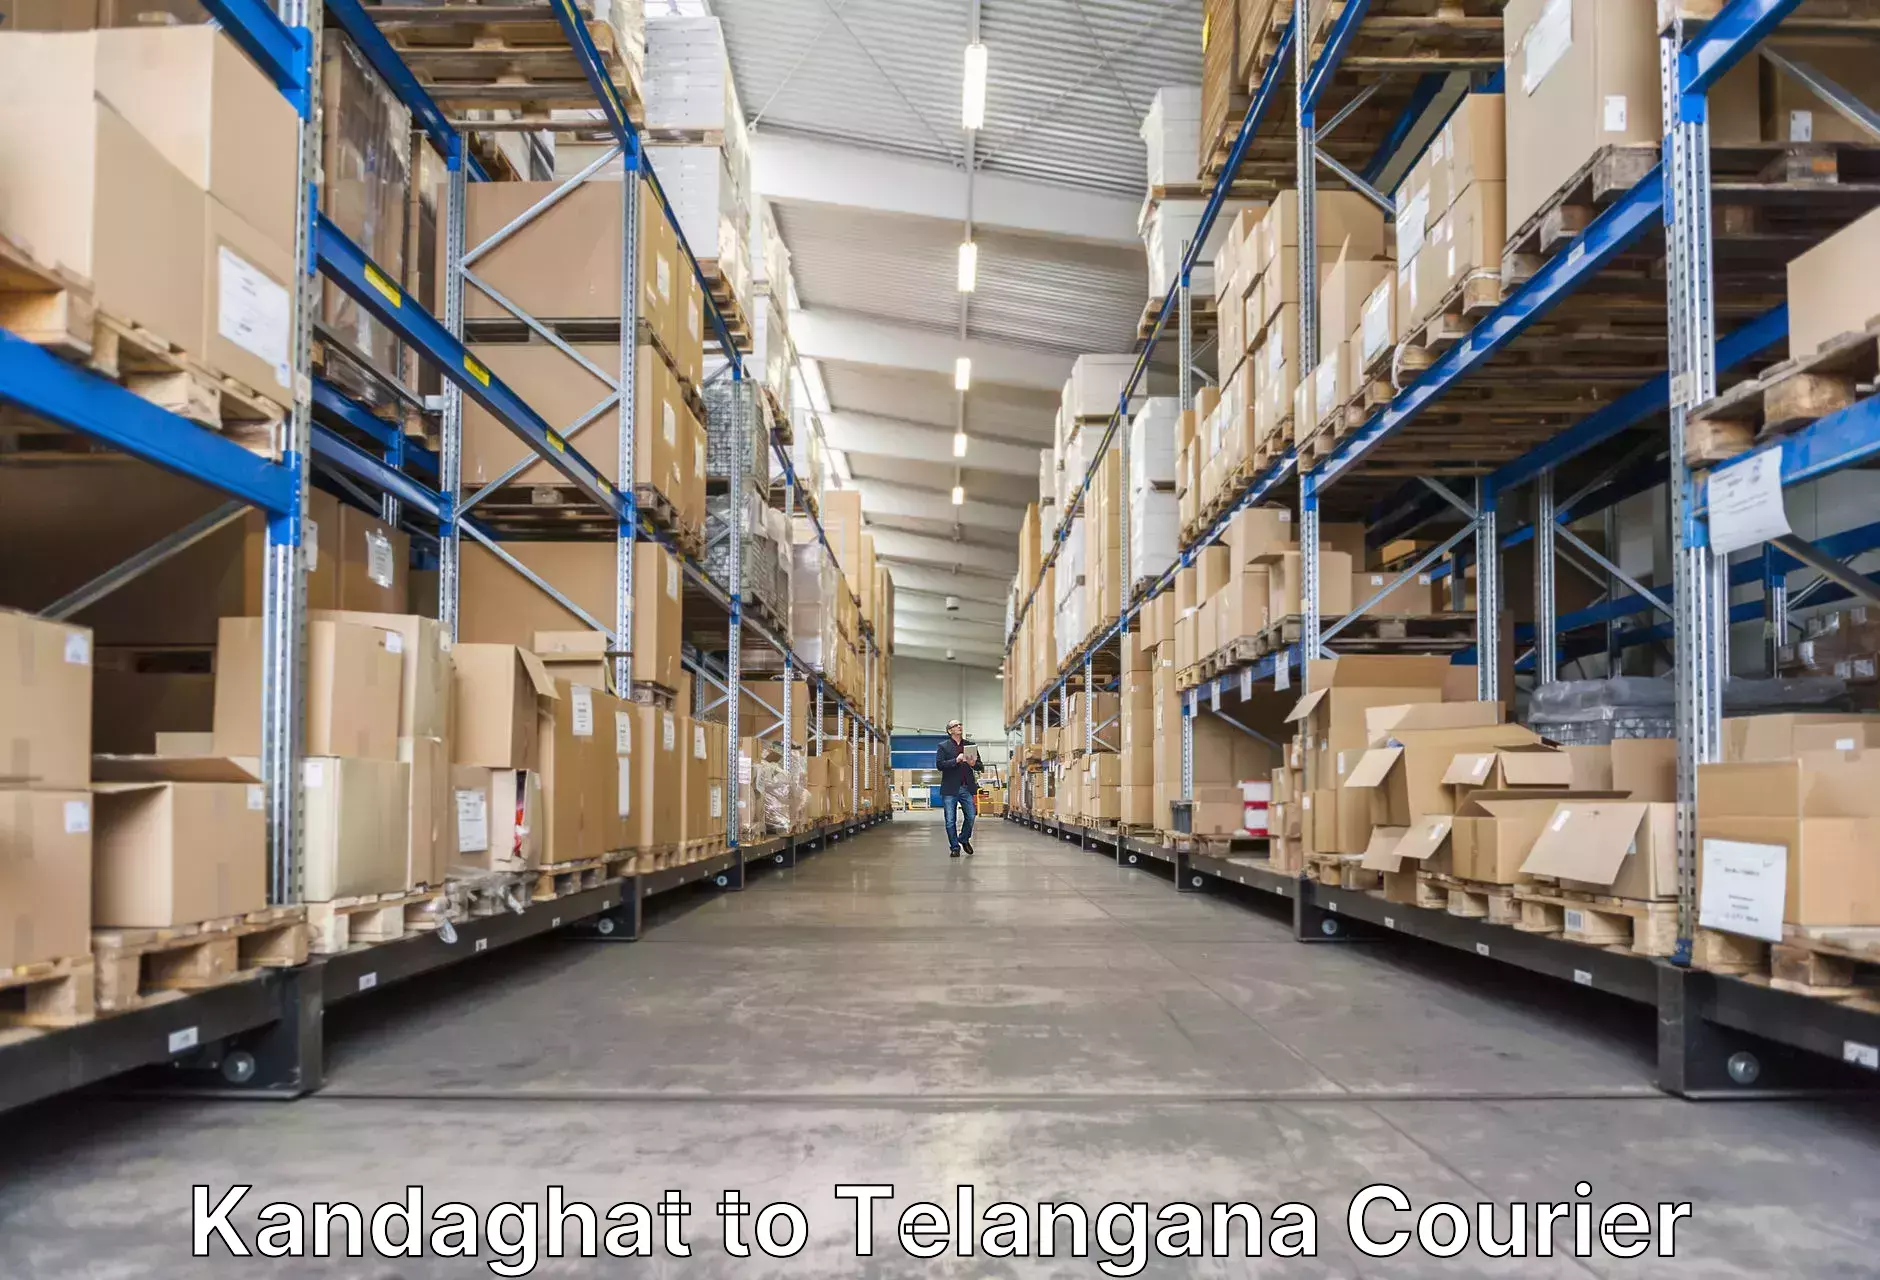 Urgent luggage shipment Kandaghat to Husnabad